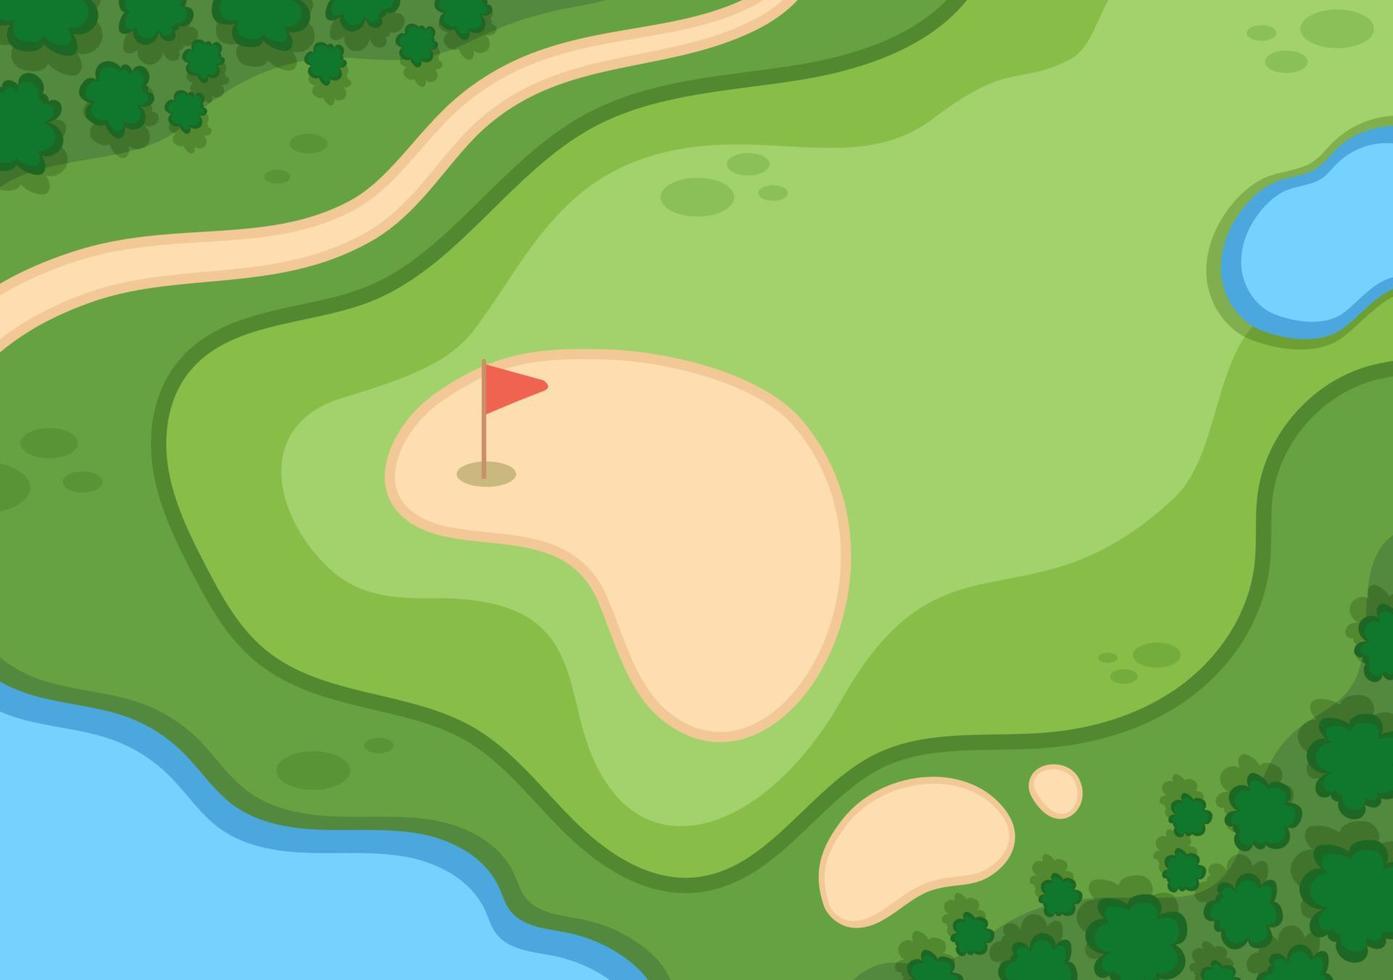 golfsport spelen met vlaggen, zandgrond, zandbunker en uitrusting op buitentuin groene planten in platte cartoon achtergrondillustratie vector